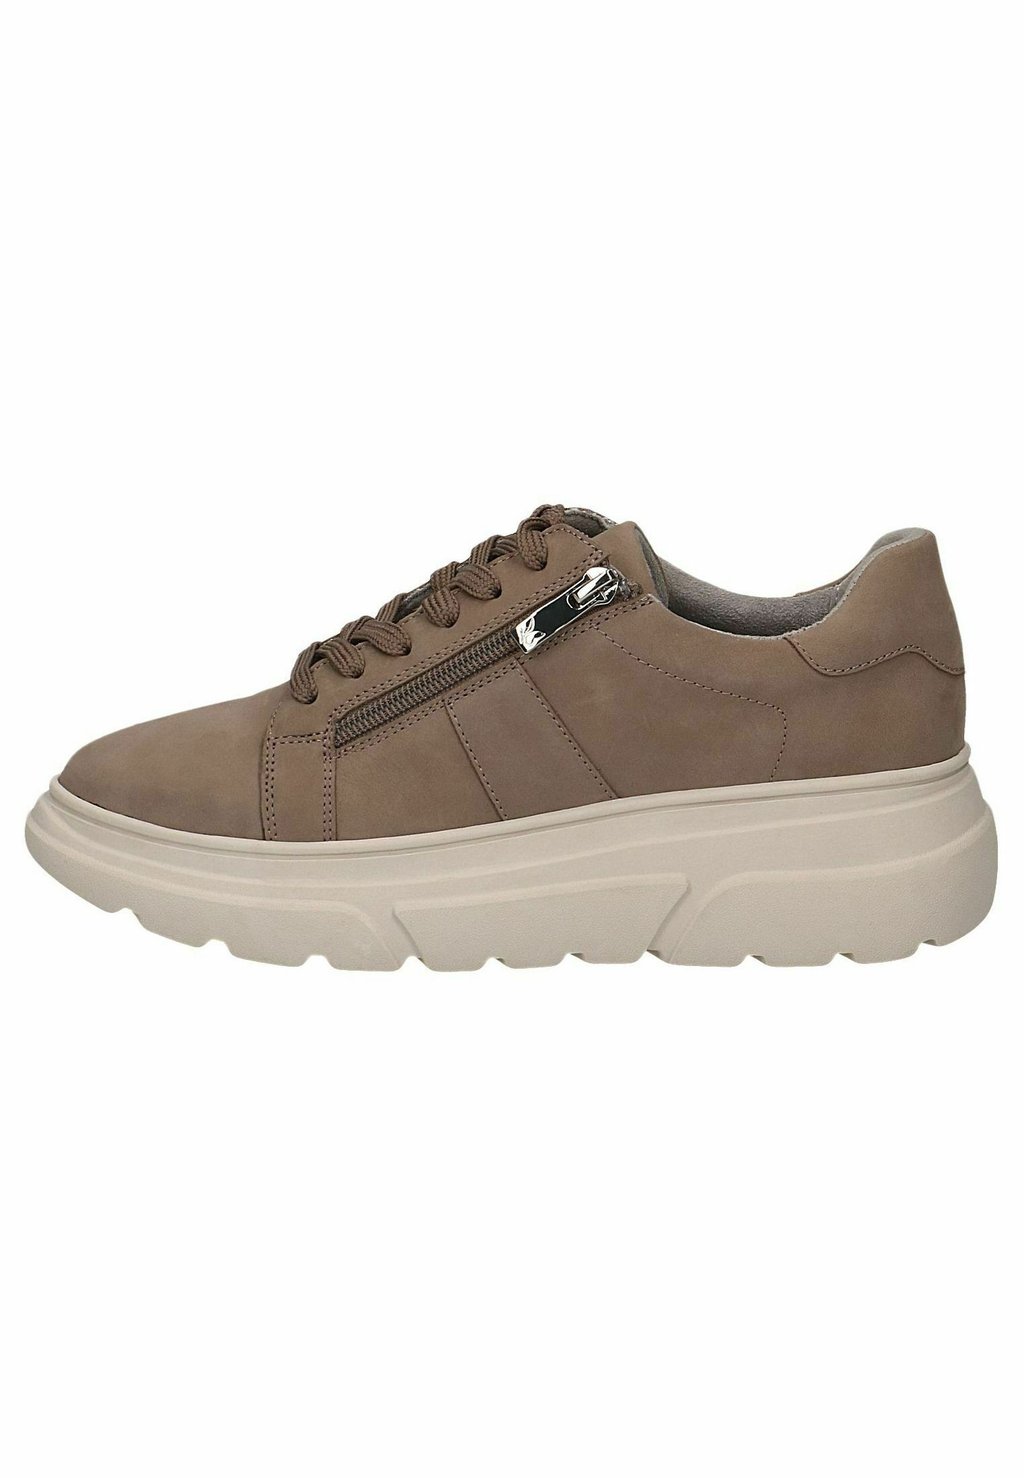 Кроссовки на шнуровке Caprice, коричневый туфли на шнуровке caprice коричневый